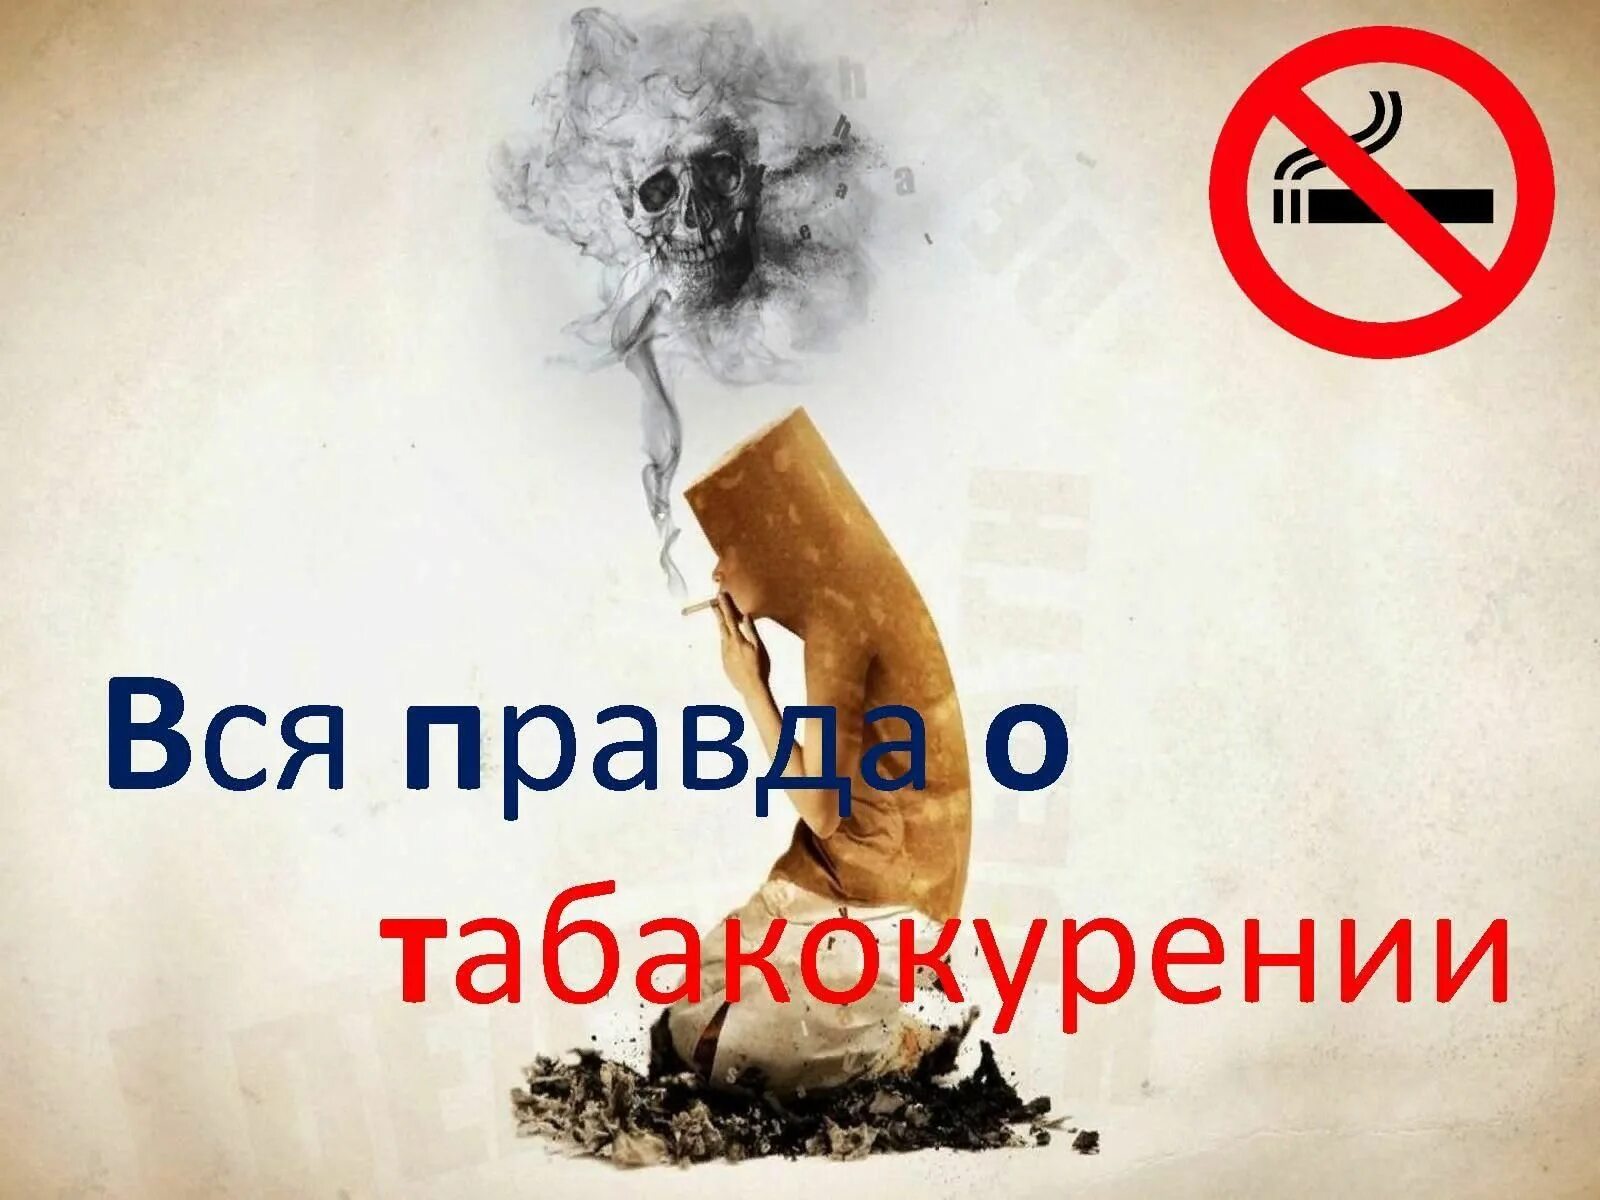 Против курил. Картинки против курения. Вся правда о курении. Правда о табакокурении. Против табака.